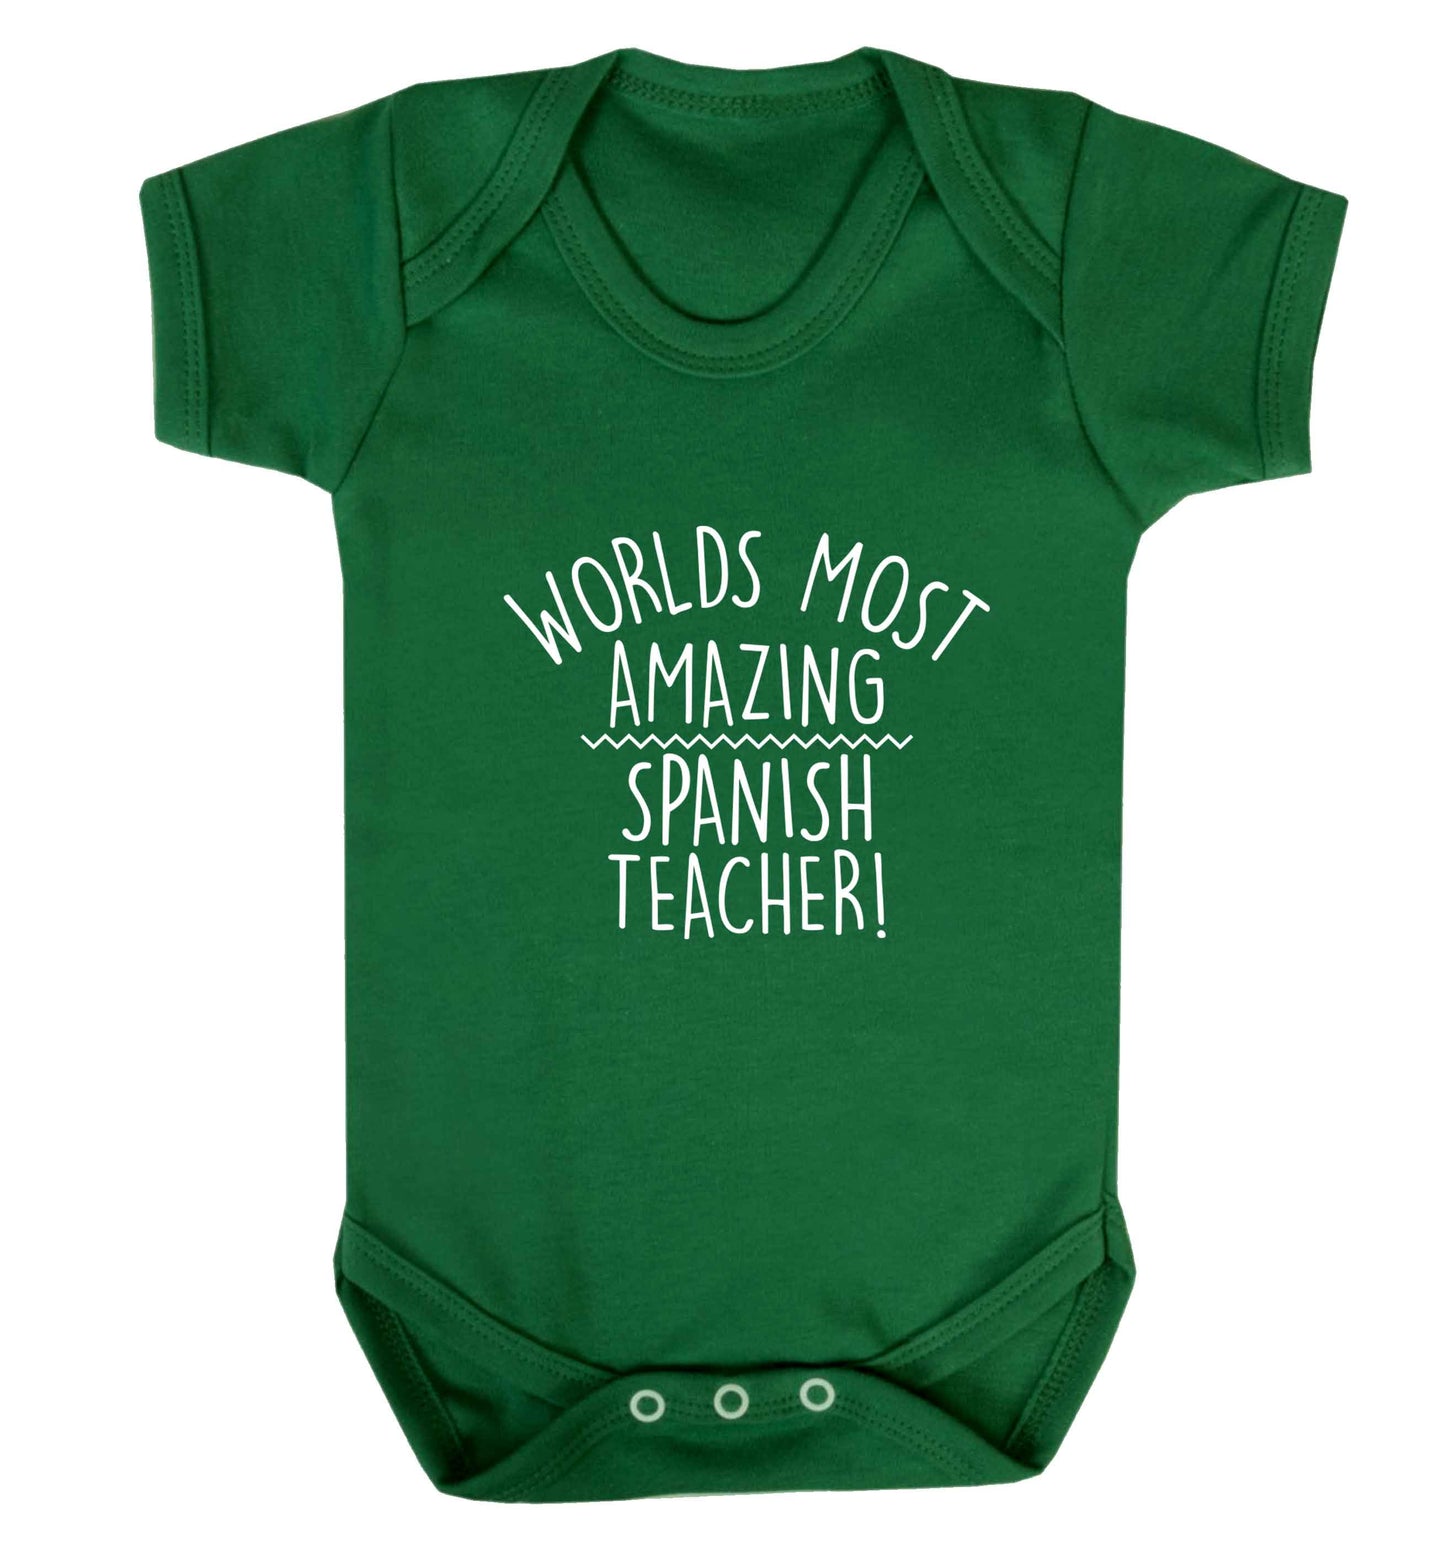 Worlds most amazing Spanish teacher baby vest green 18-24 months